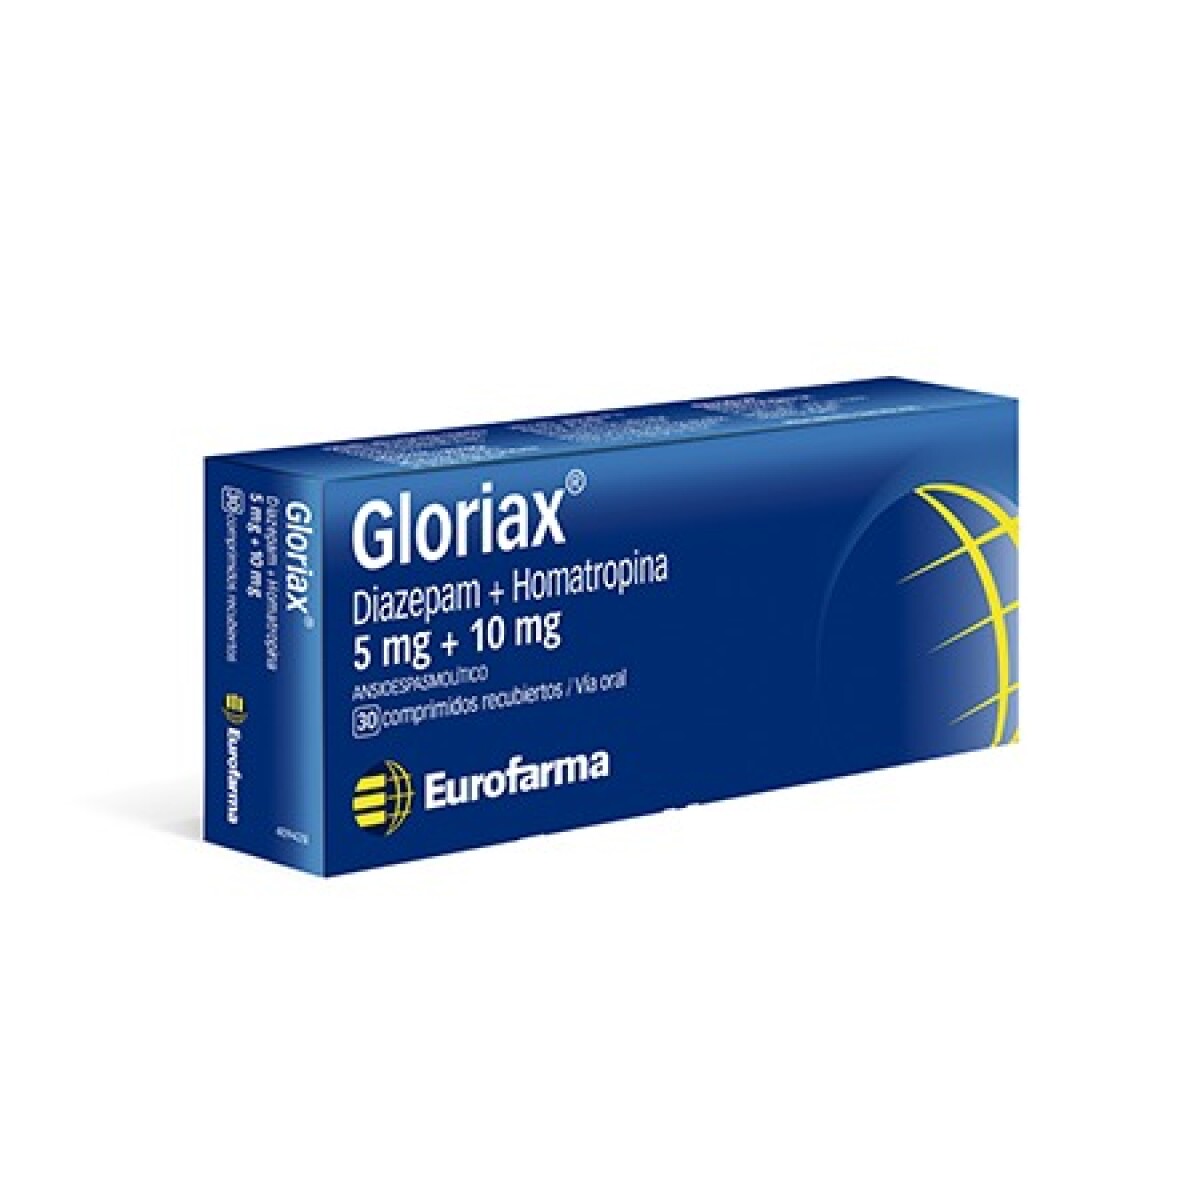 Gloriax 30 Comp. 